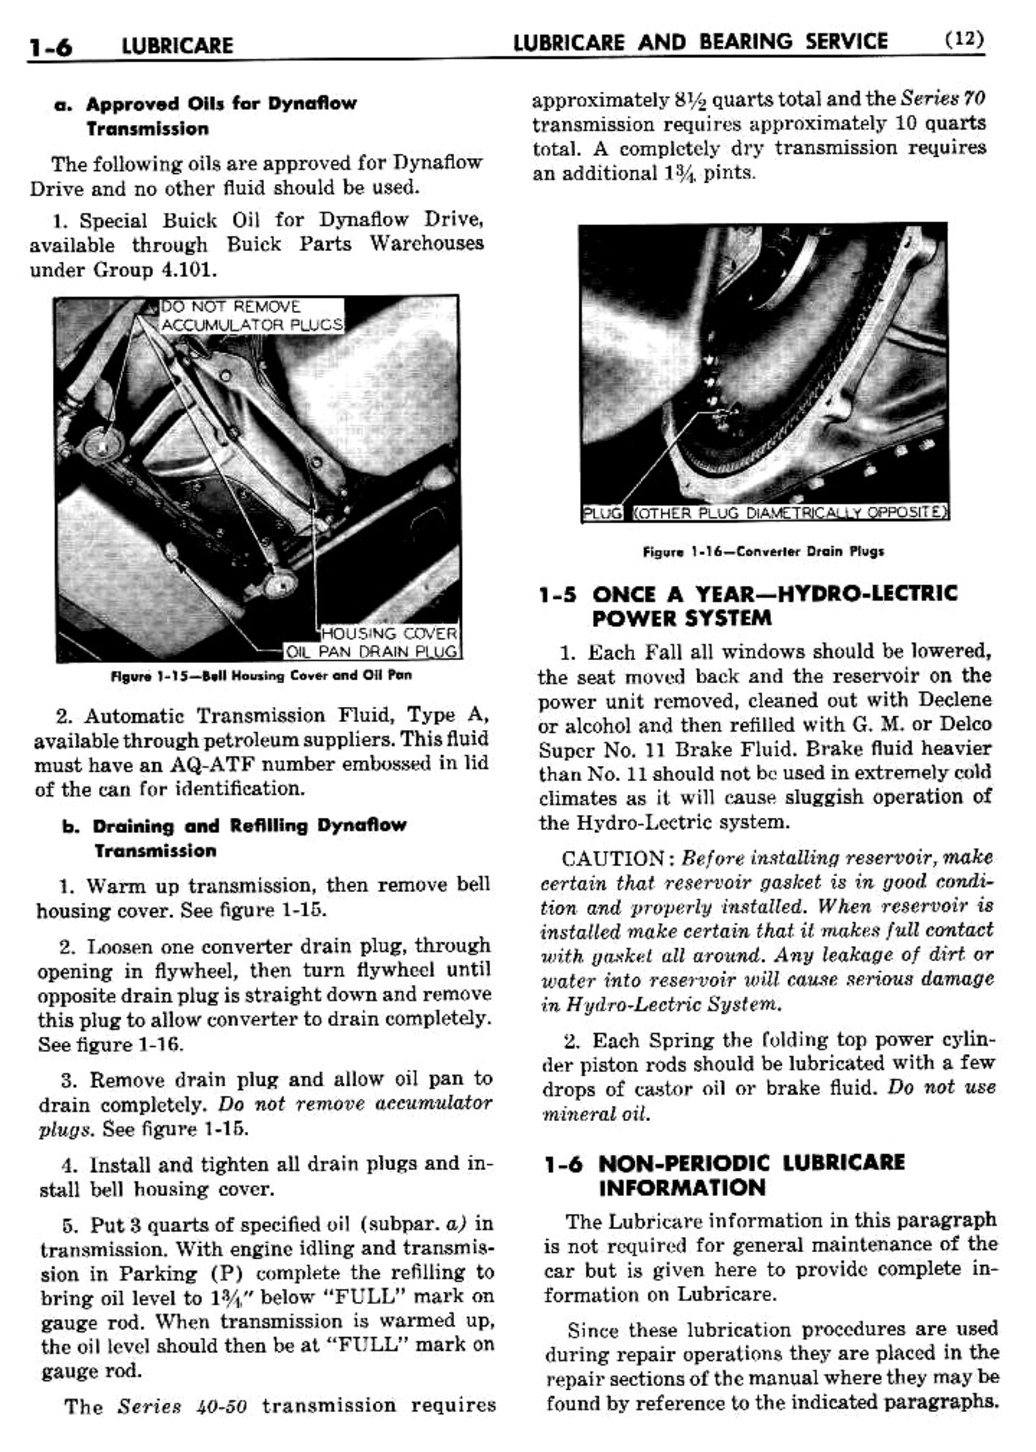 n_02 1950 Buick Shop Manual - Lubricare-006-006.jpg